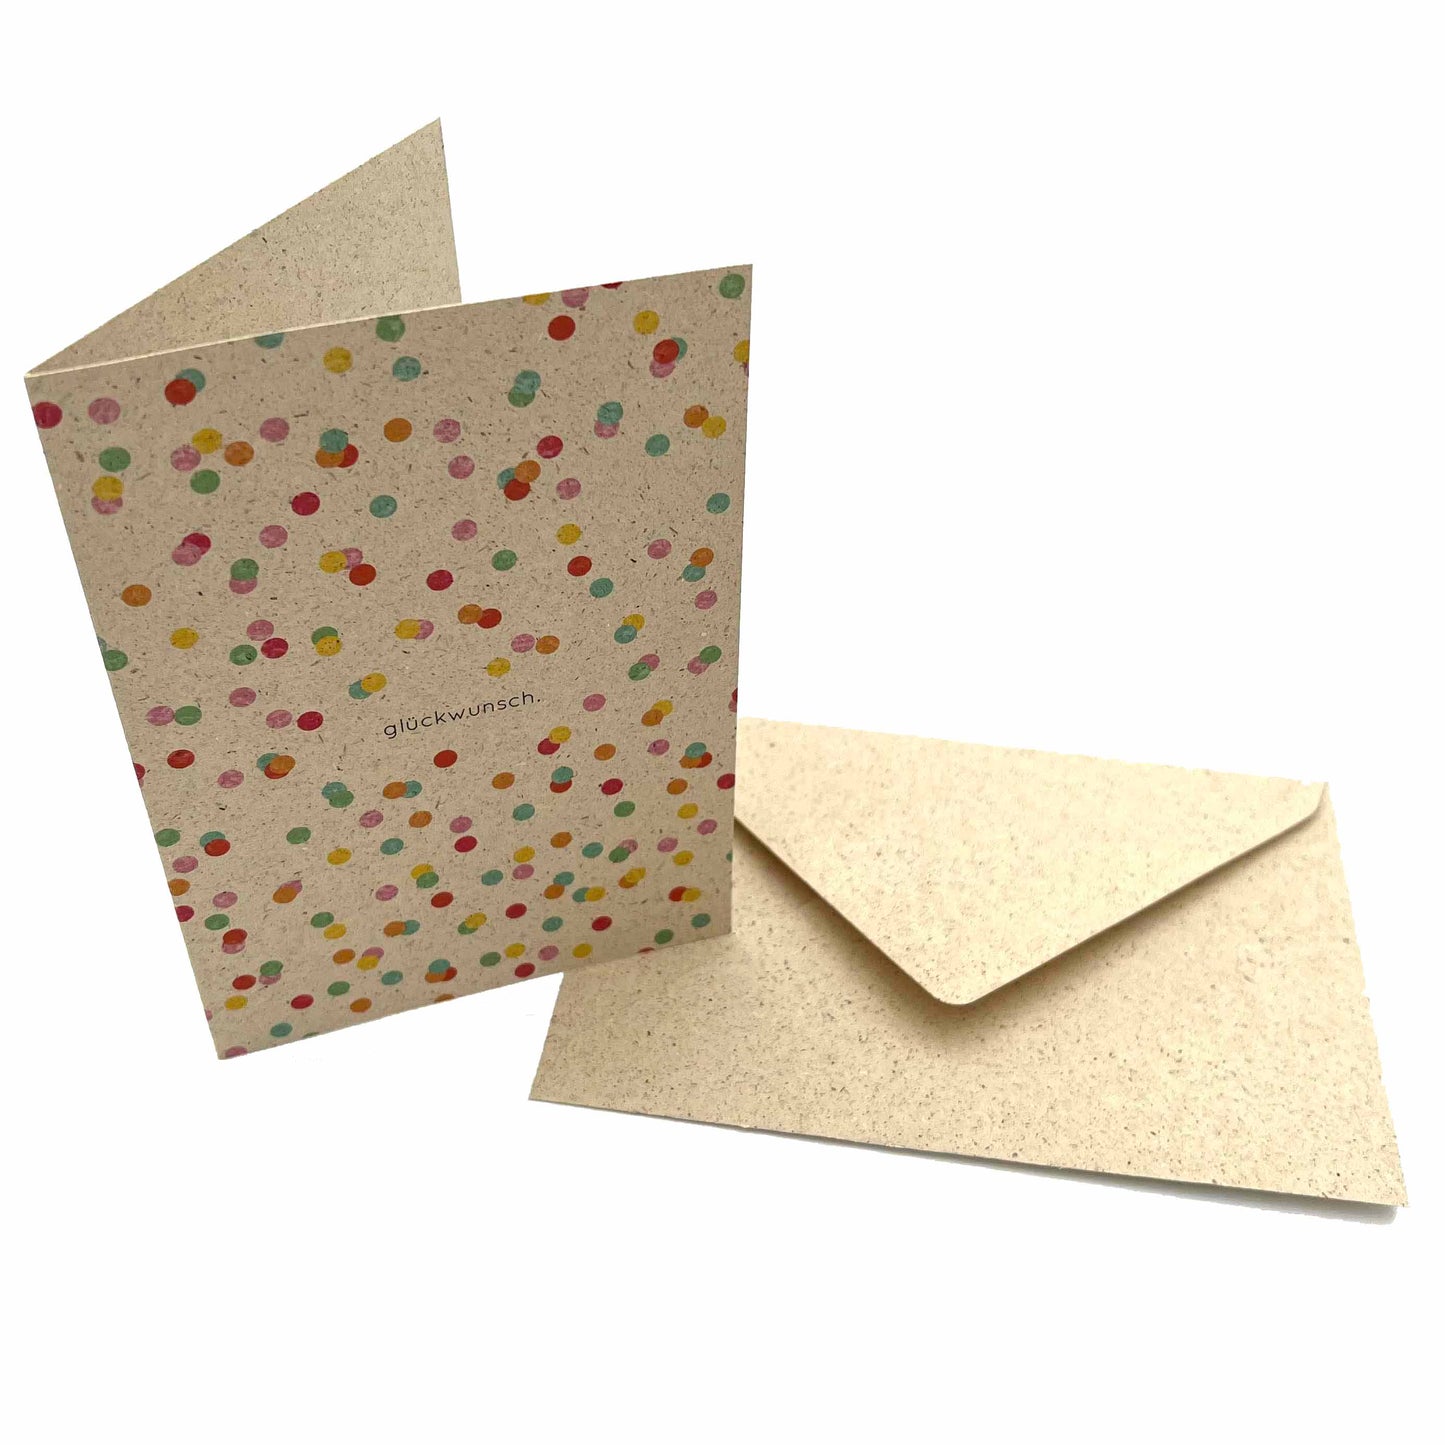 SVEEKA nachhaltige Klappkarte "glückwunsch" mit buntem Konfetti inkl. Umschlag | nachhaltiges Graspapier